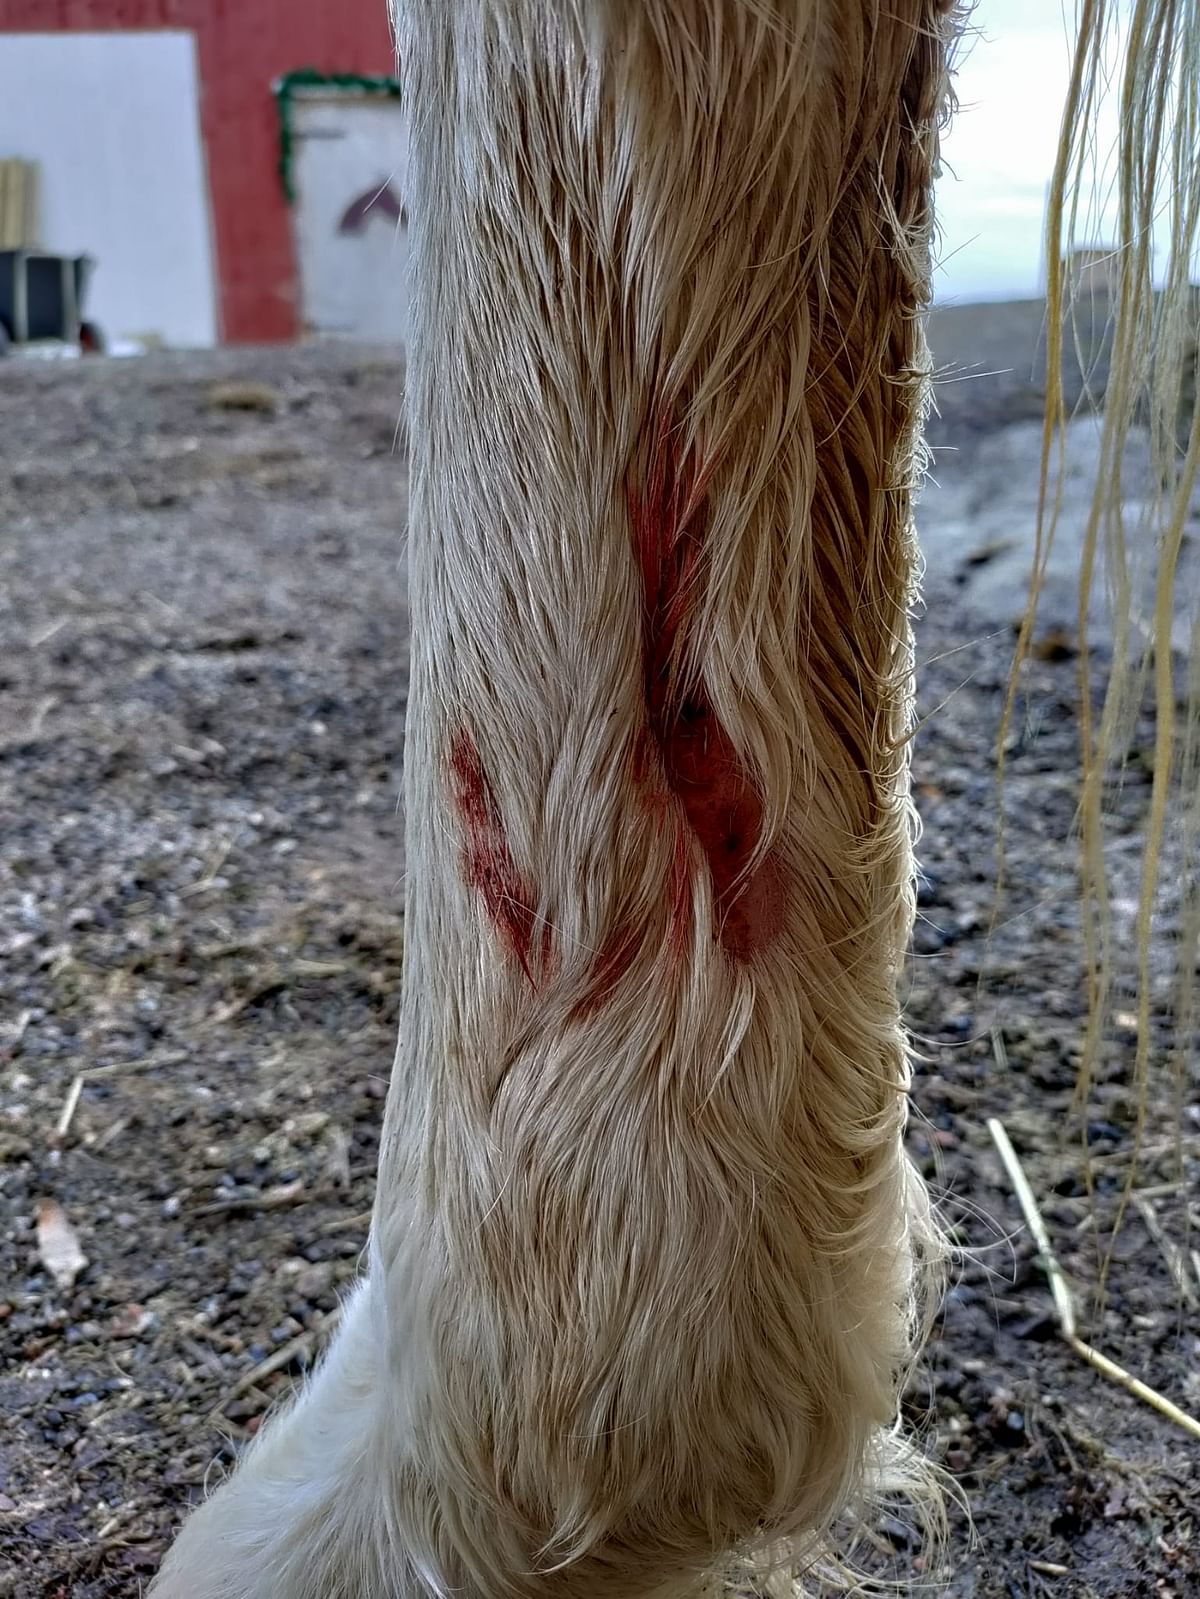 Haavoissa on infektioriski, mutta hevonen ja poni ovat nyt antibioottikuurilla.